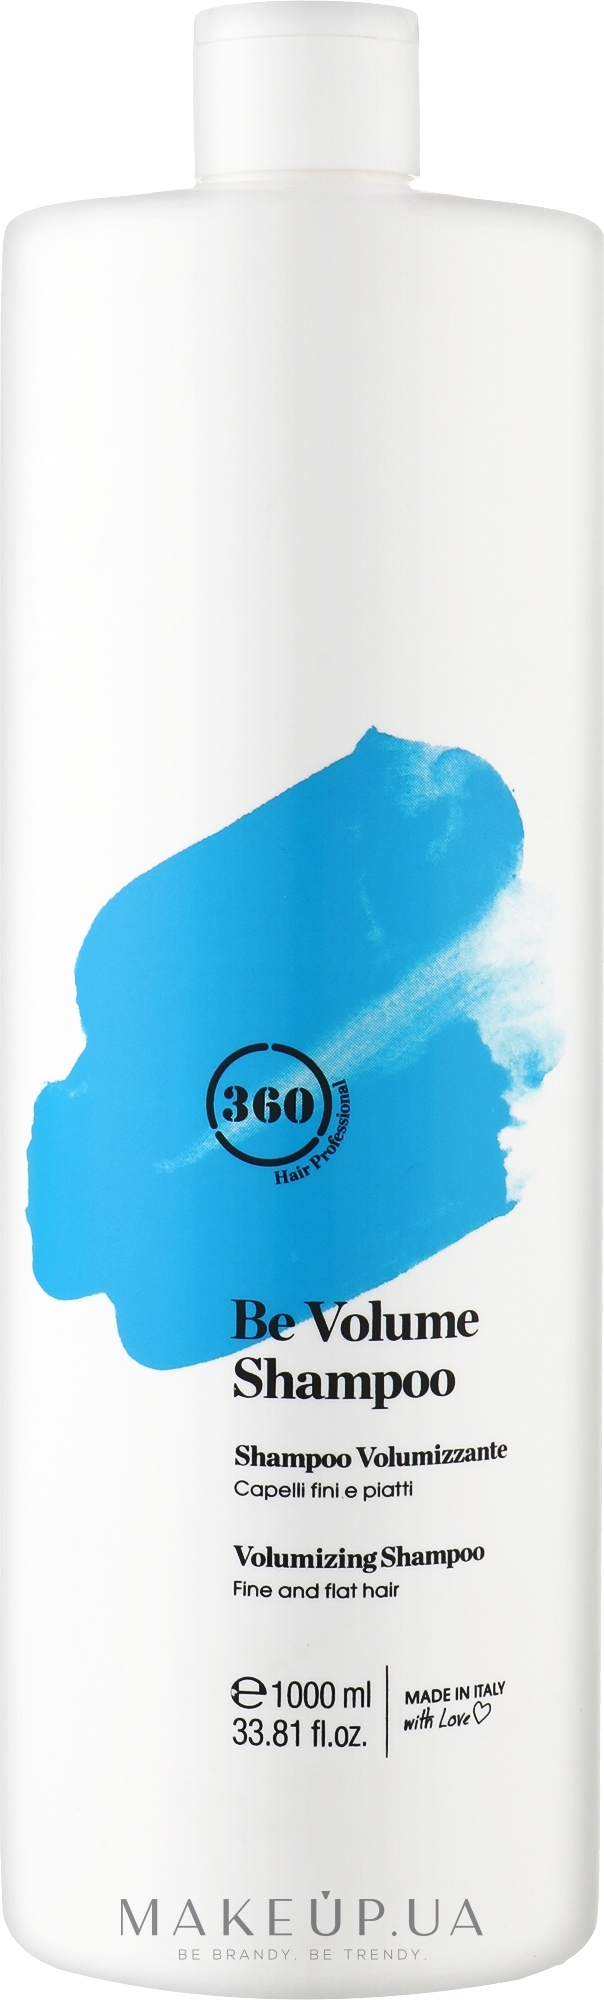 Шампунь для придания объема тонким и слабым волосам - 360 Be Volume Shampoo — фото 1000ml